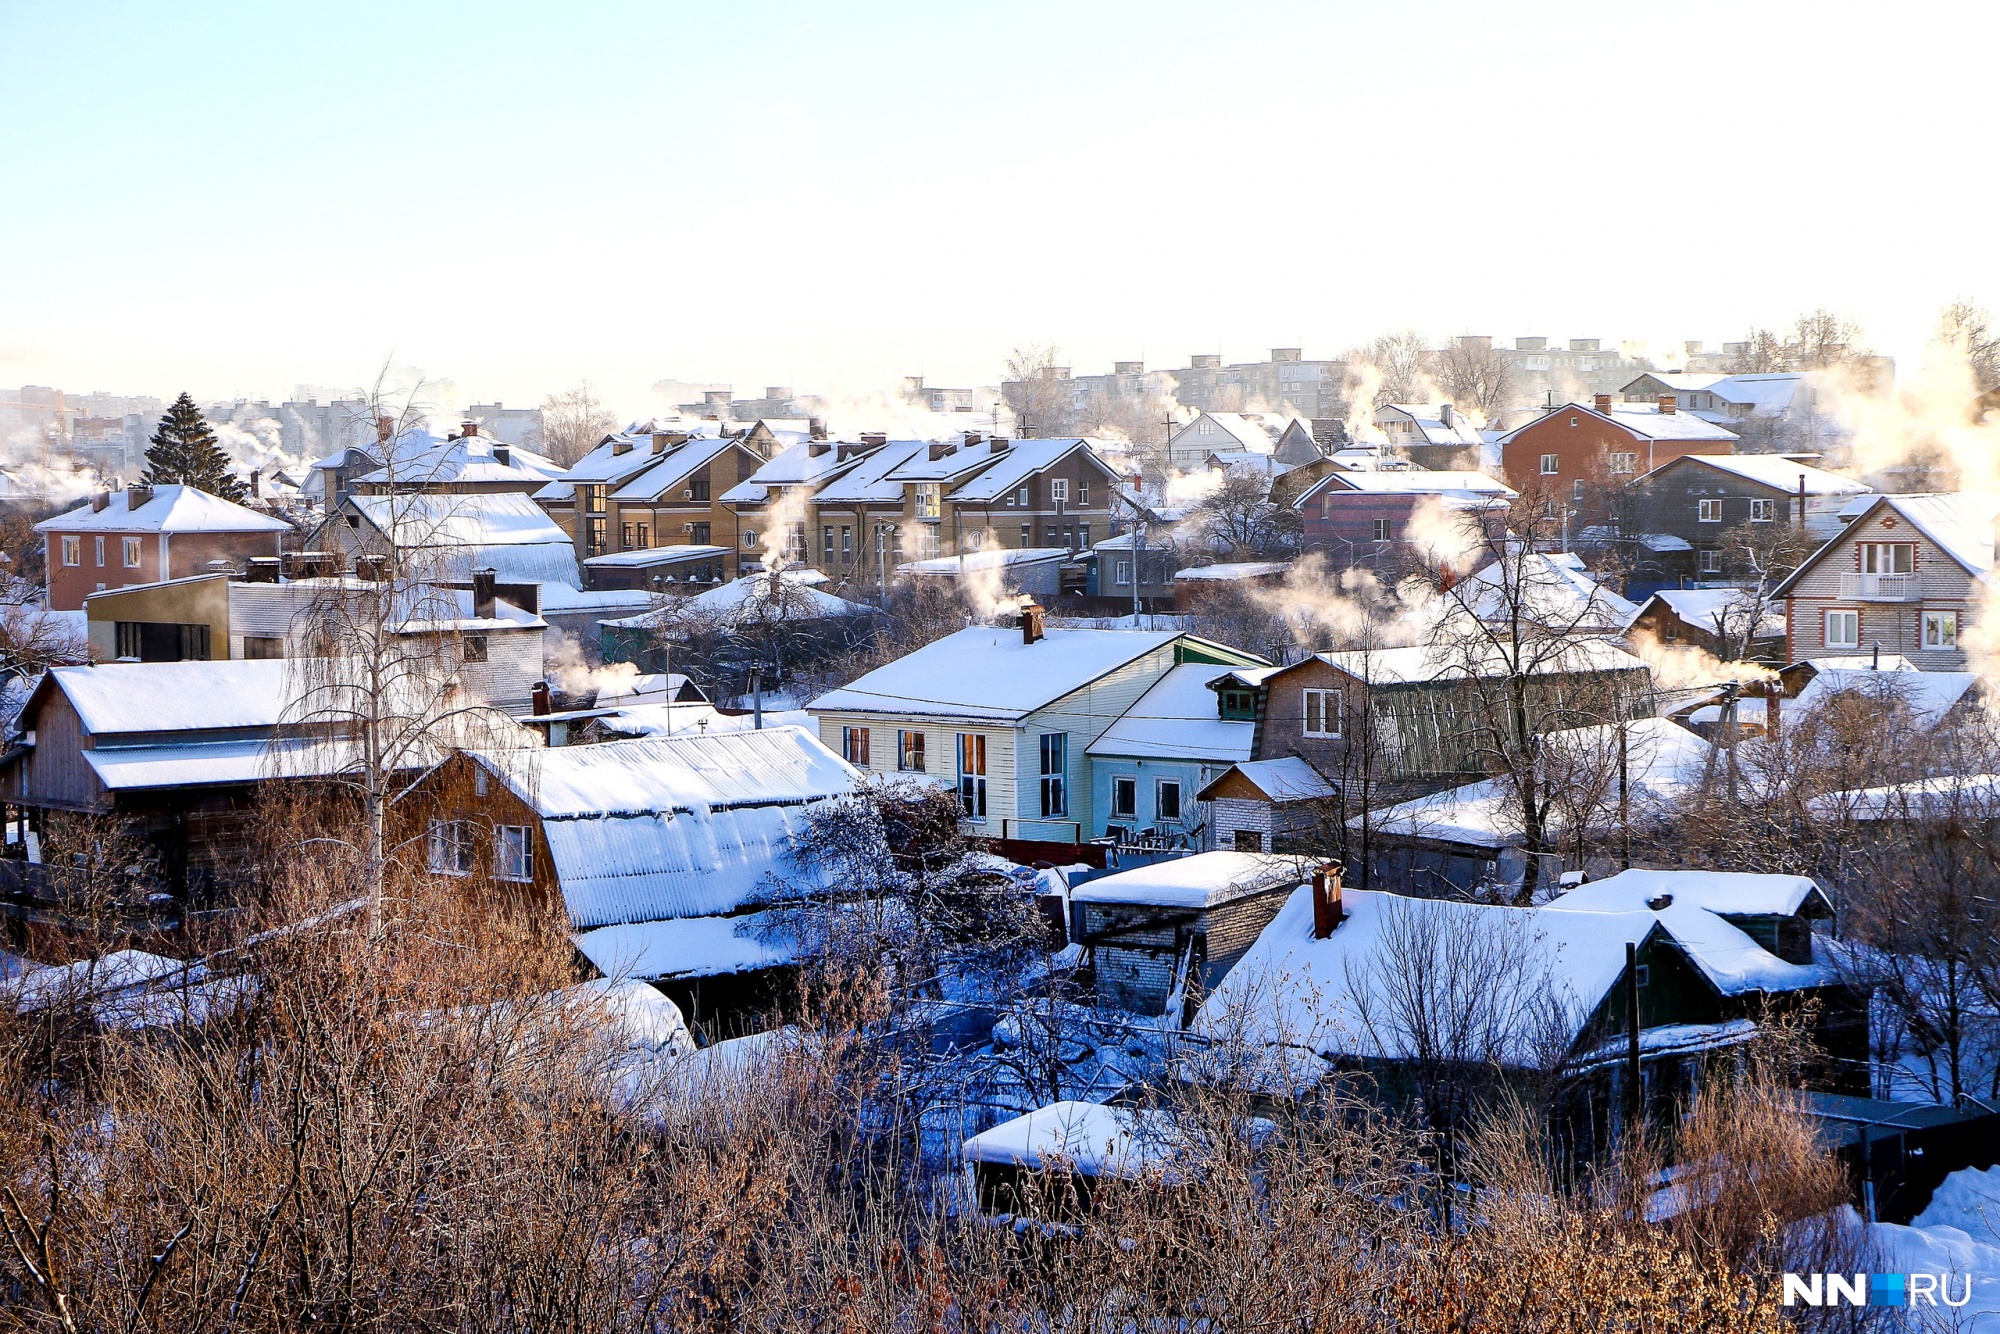 Прогноз погоды: на выходных в Нижнем Новгороде будет солнечно, но очень морозно